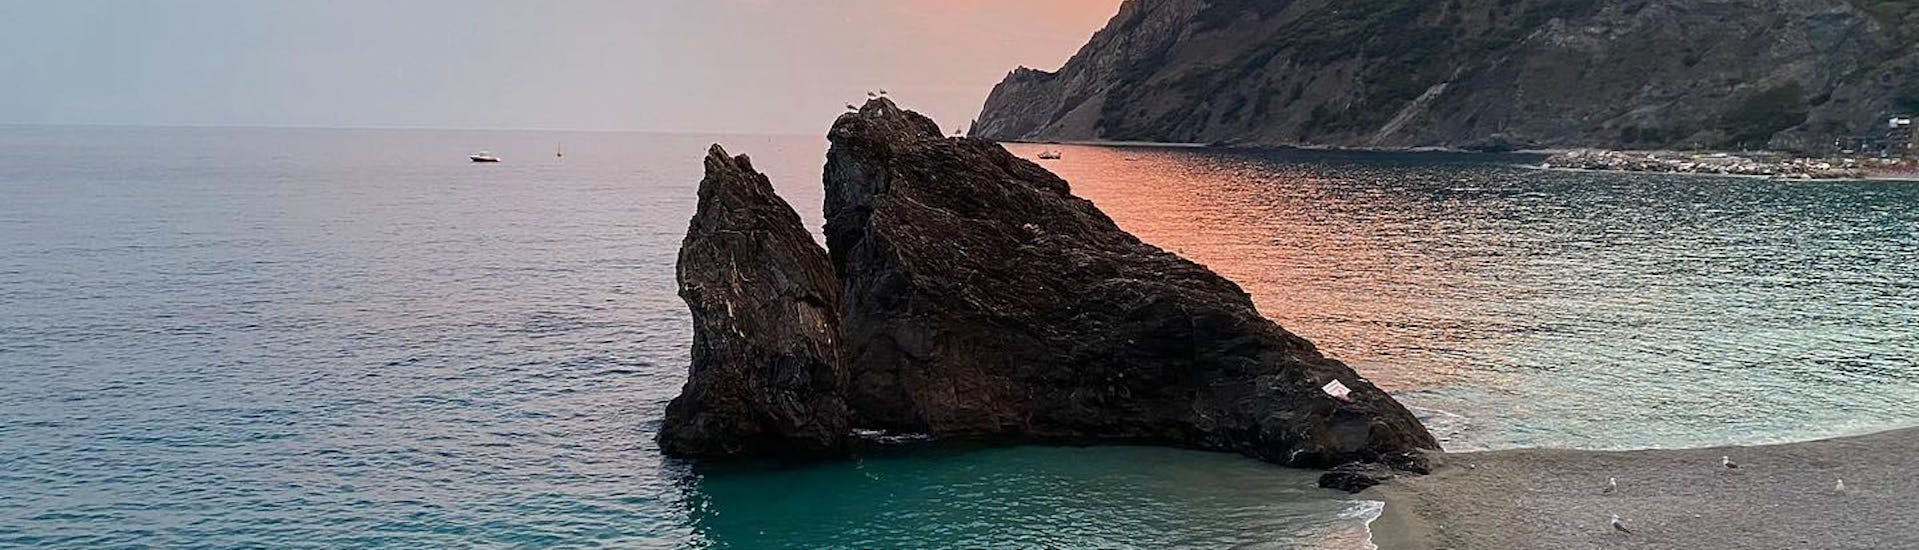 La splendida roccia sulla spiaggia di Monterosso può essere ammirata durante le escursioni in barca con Sea Breeze Boat Tours Levanto.